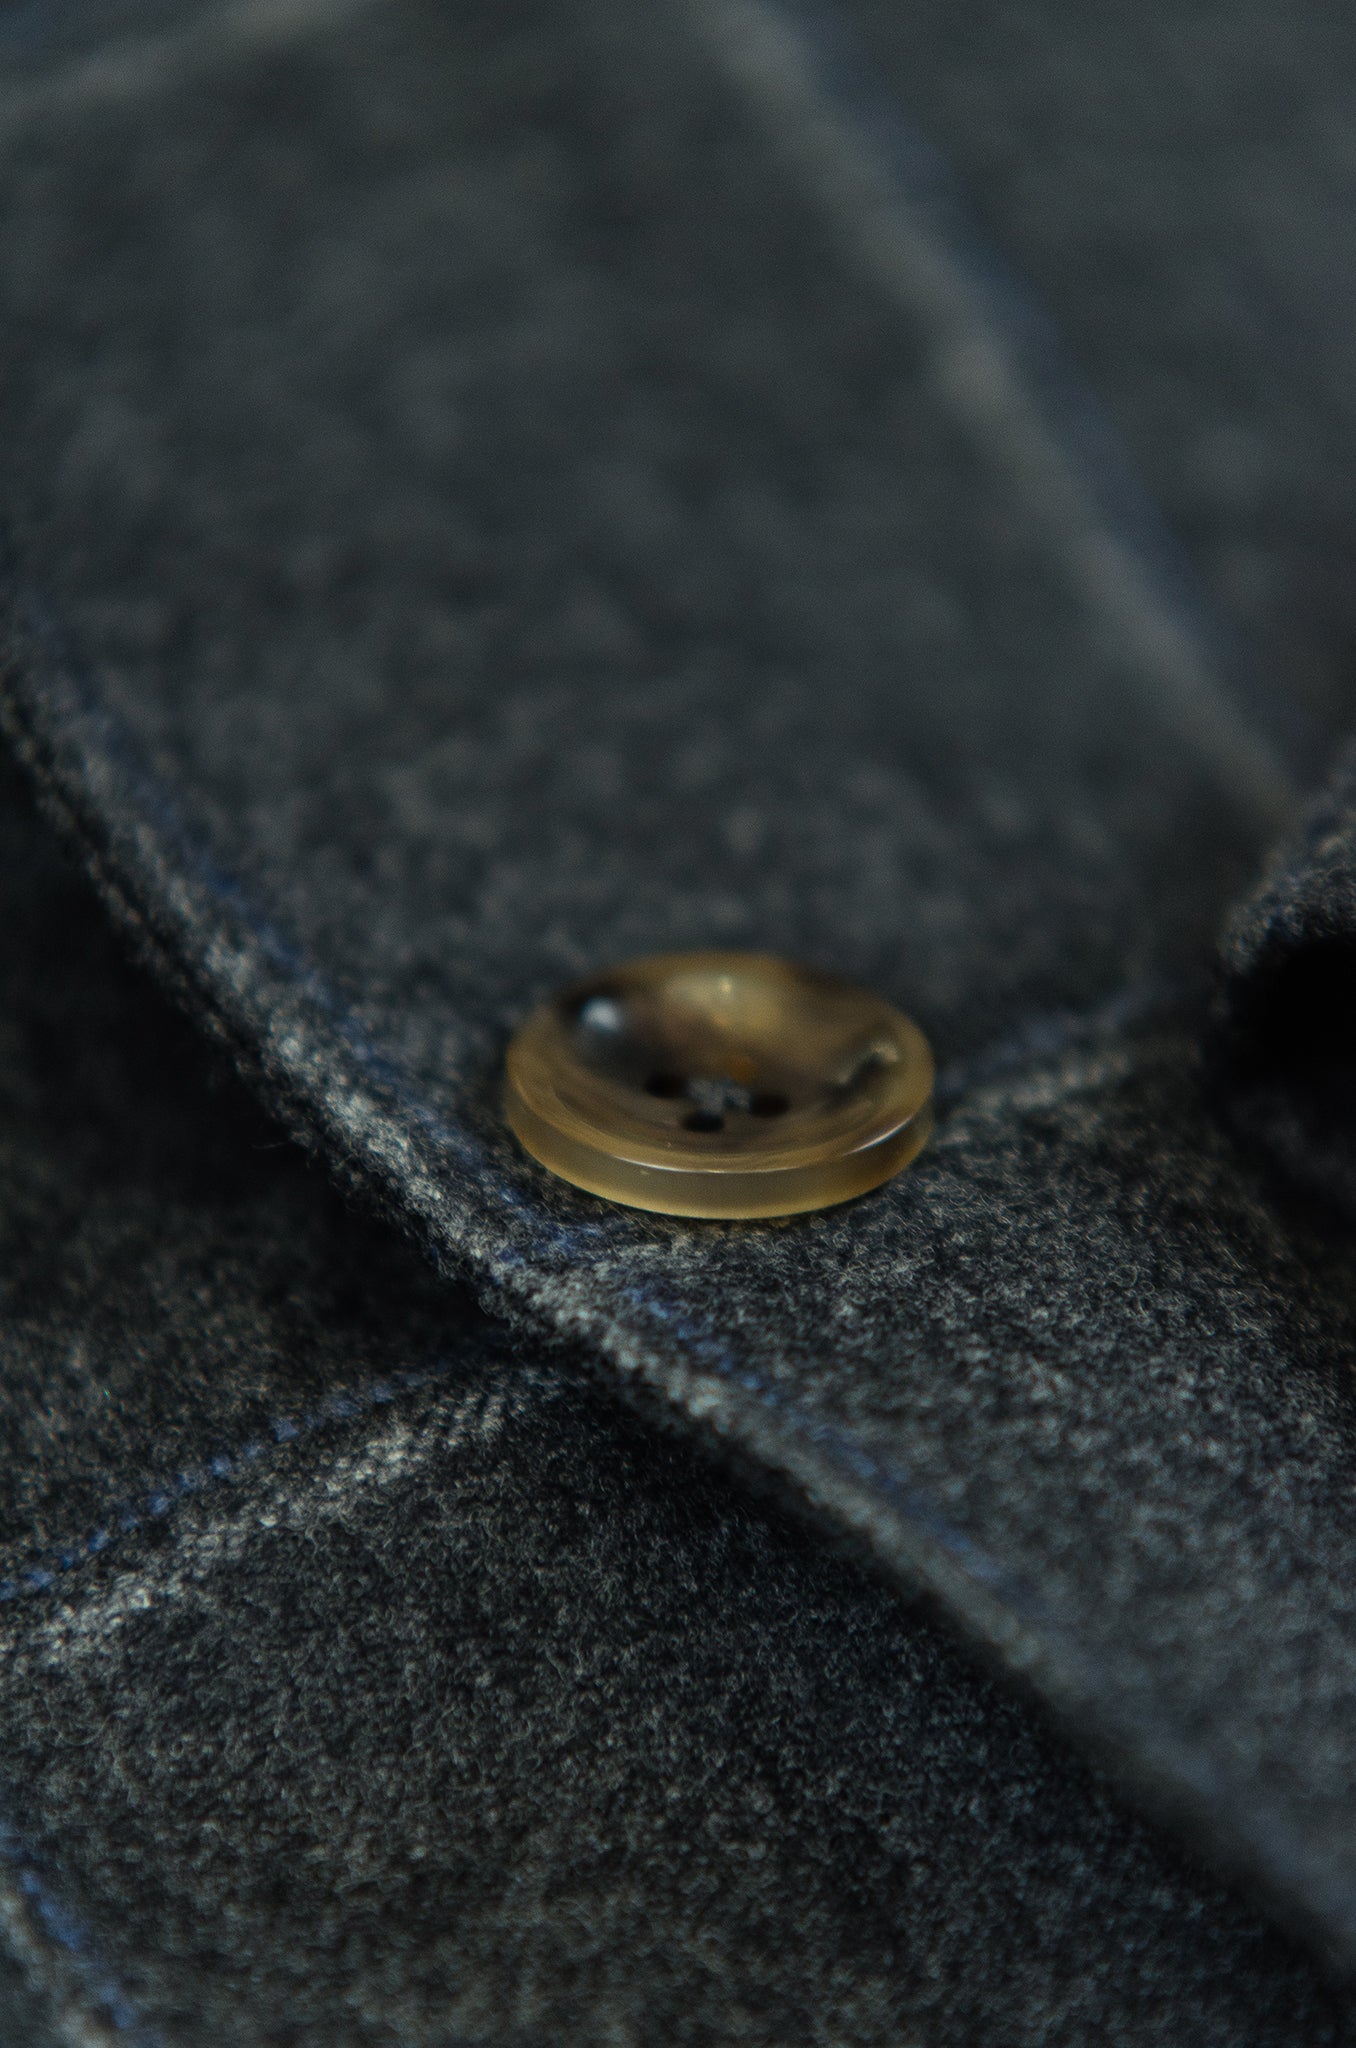 Blasi blazer solid flannel check (Dark Grey)